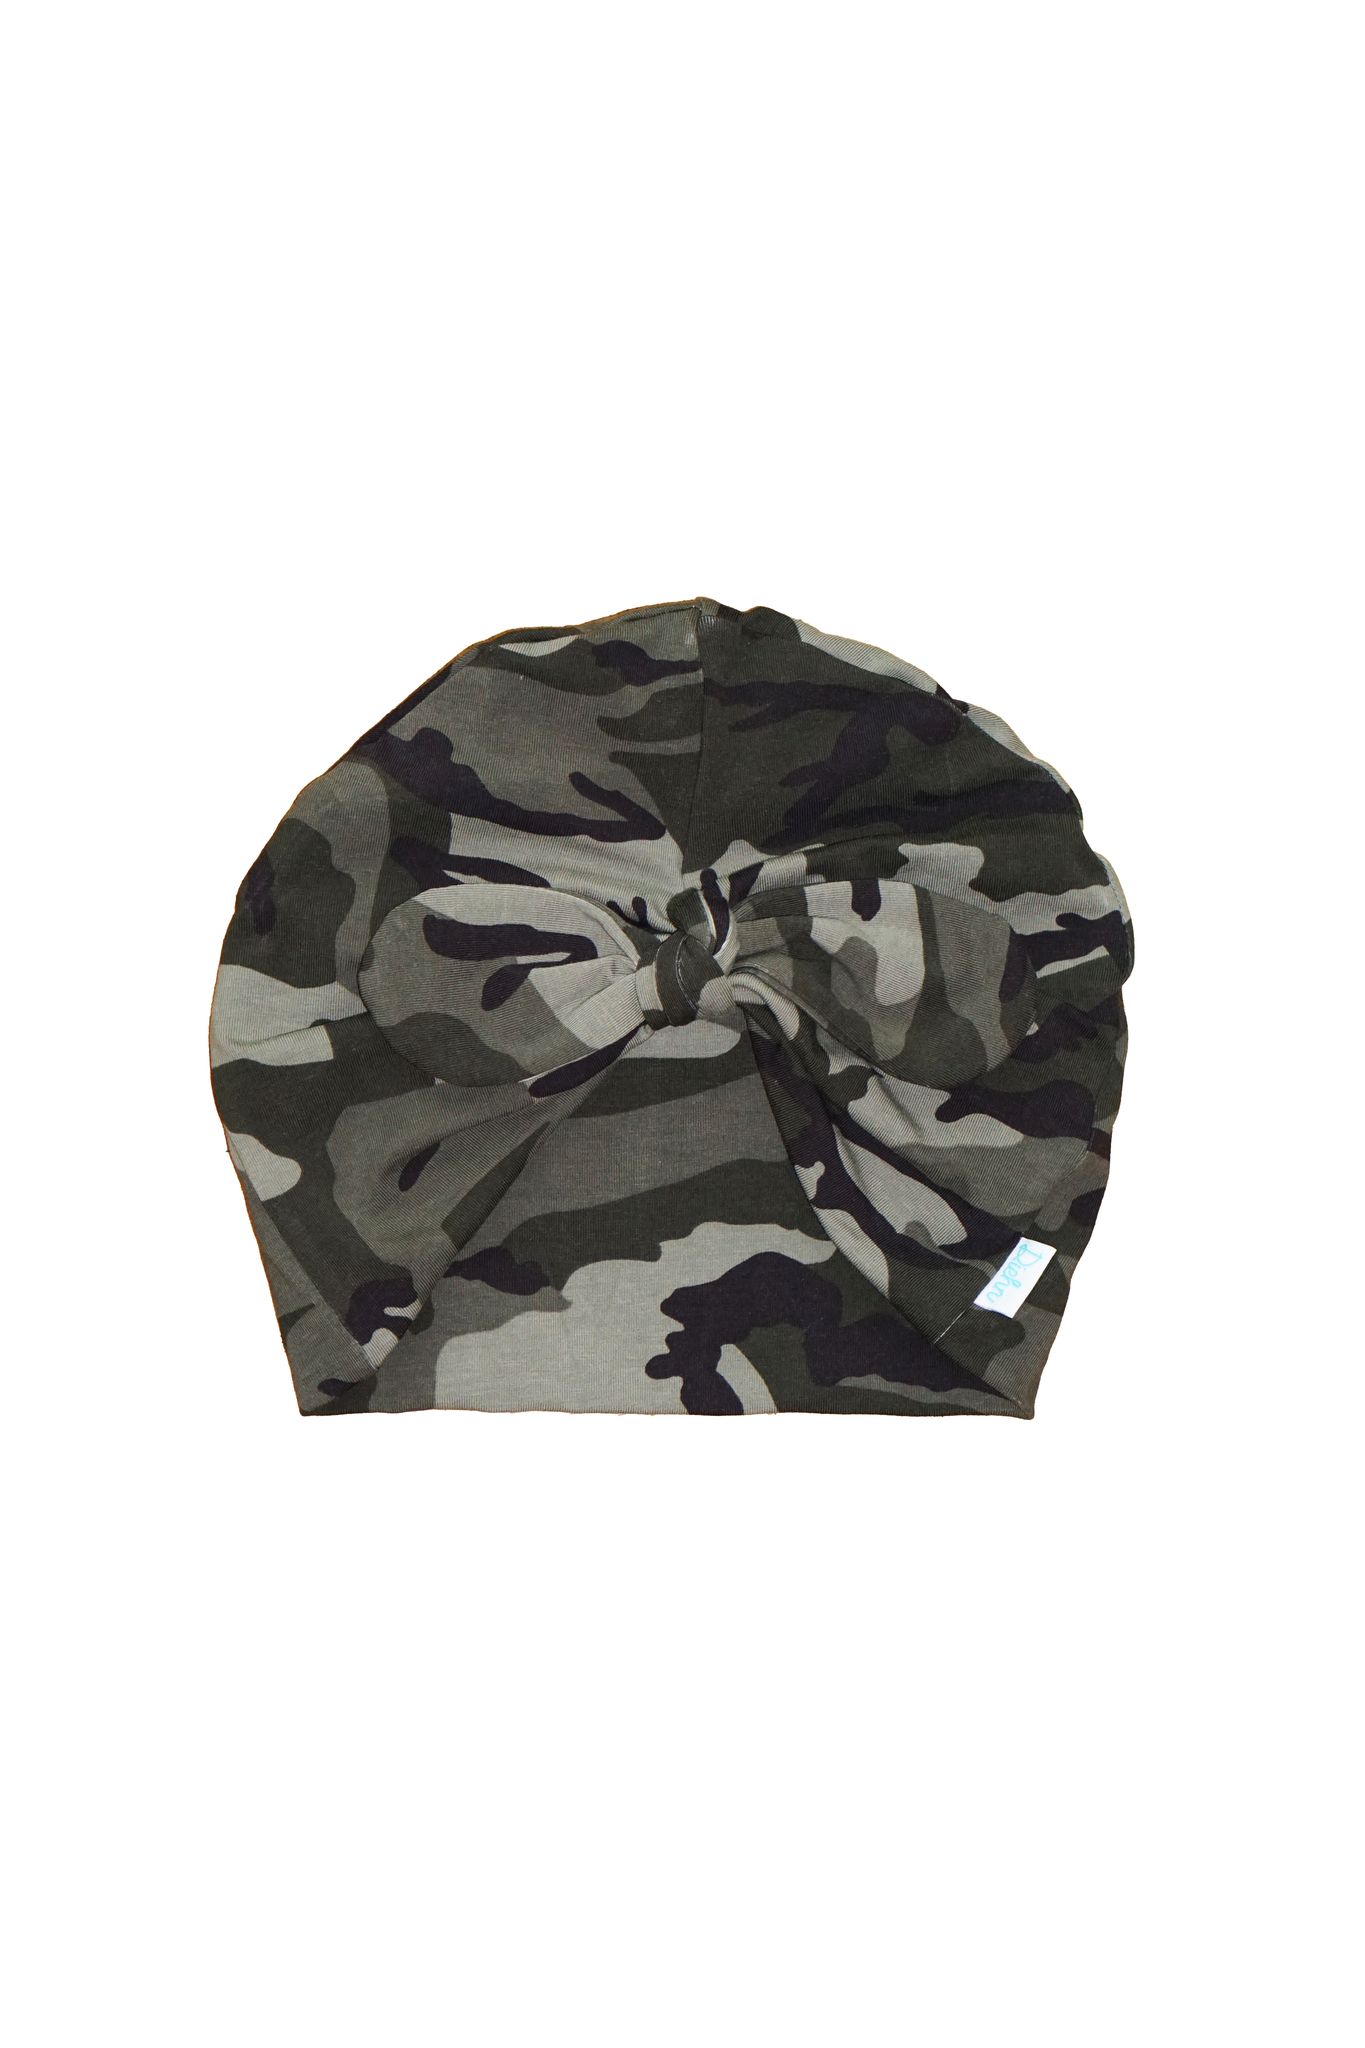 Turbanmössa knut - Camouflage